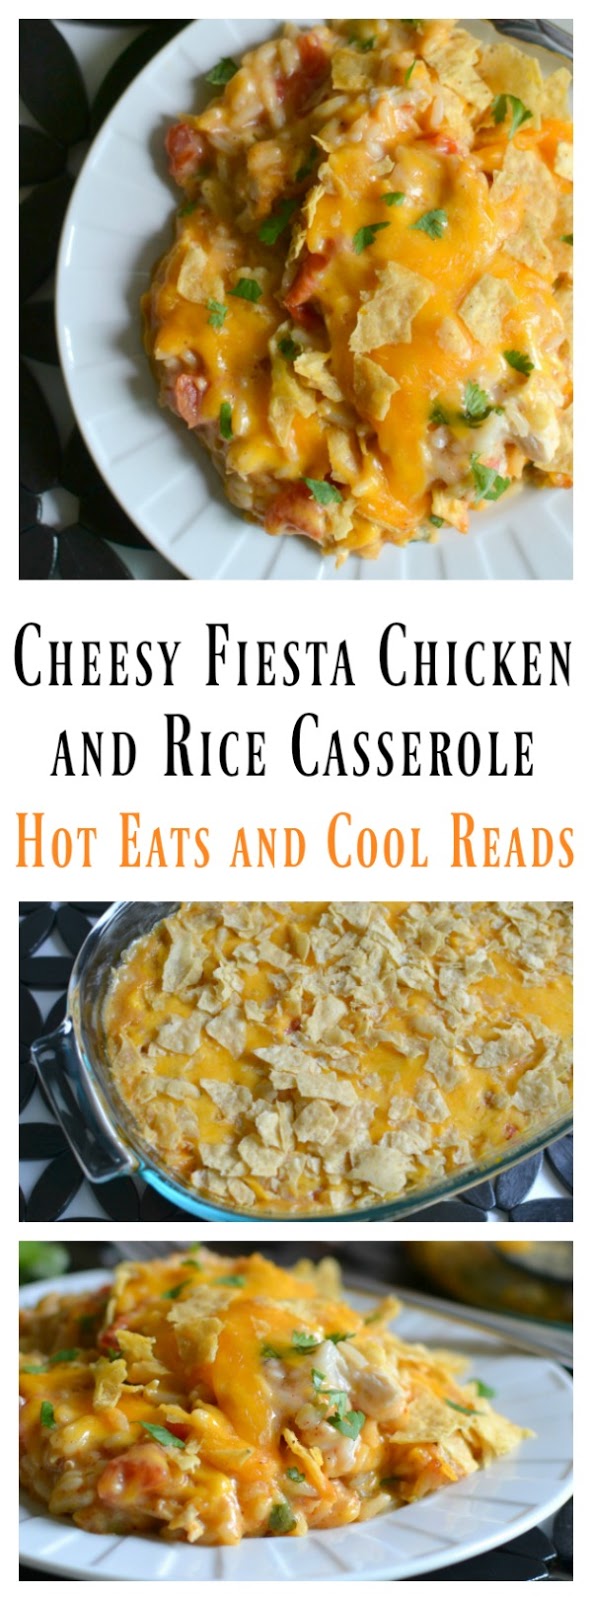 Cheesy Fiesta Chicken and Rice Casserole Recipe